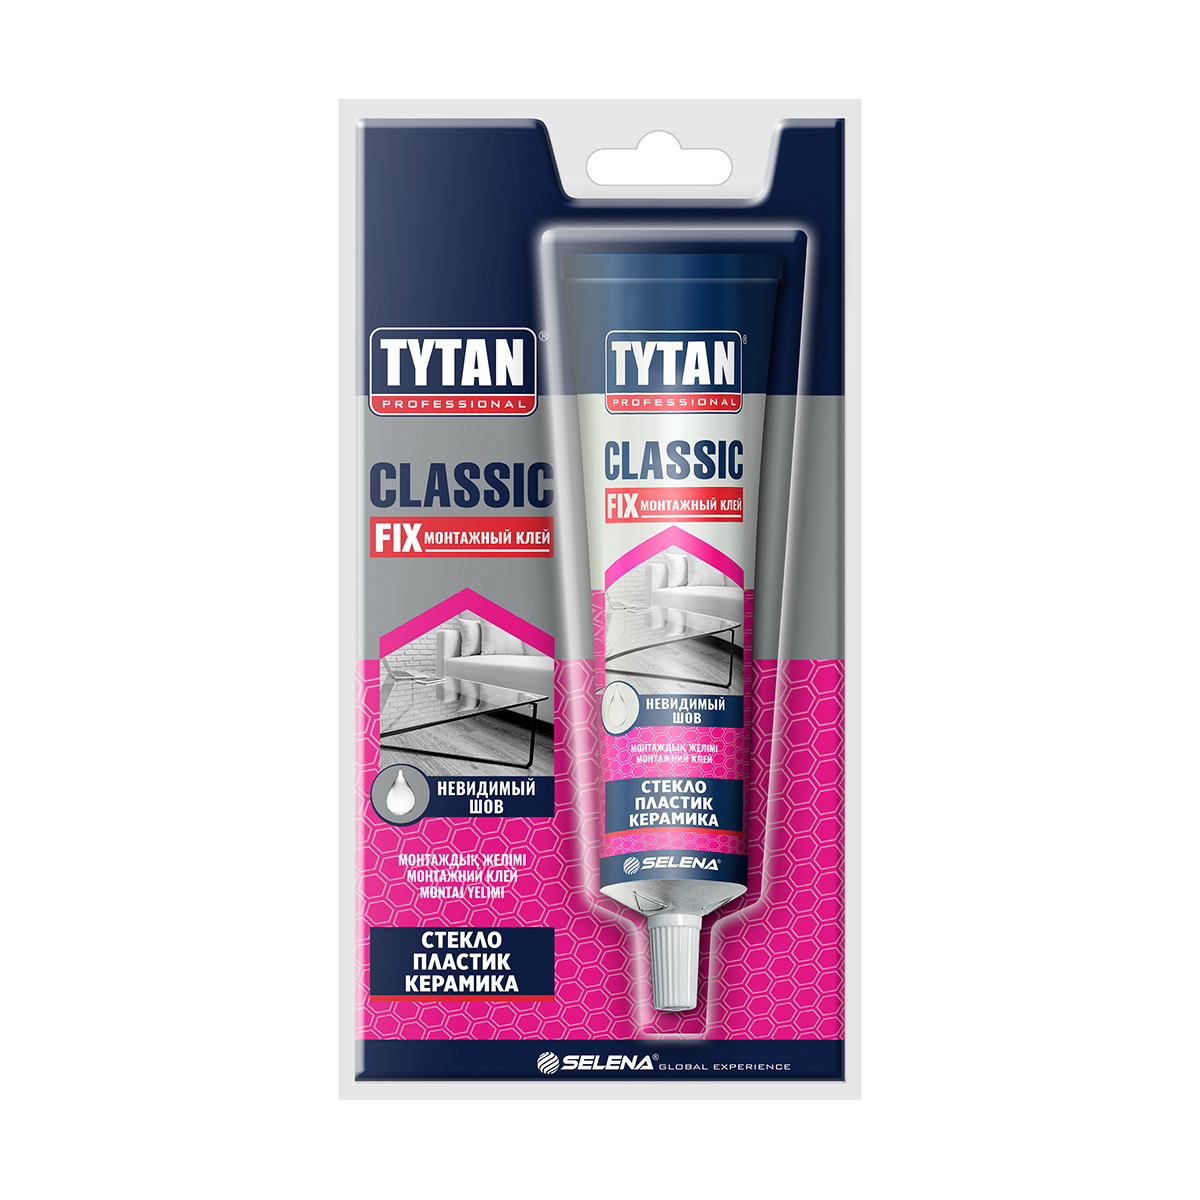 Tytan professional Classic Fix клей монтажный 100 мл прозрачный